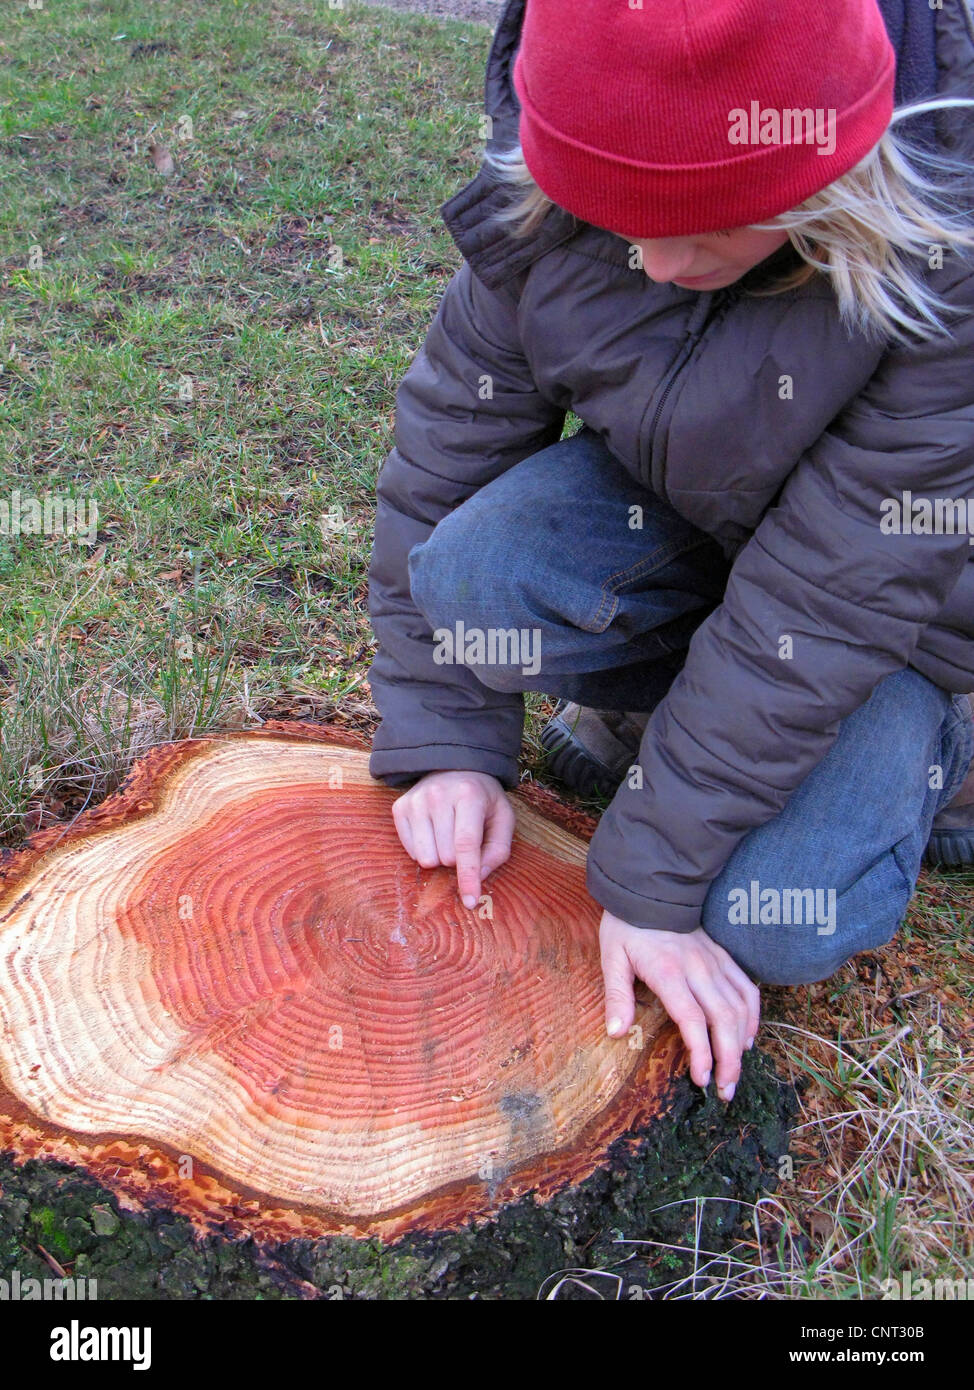 El abeto de Douglas (Pseudotsuga menziesii), árbol snag con claramente visibles los anillos anuales, los niños contando la edad del árbol Foto de stock